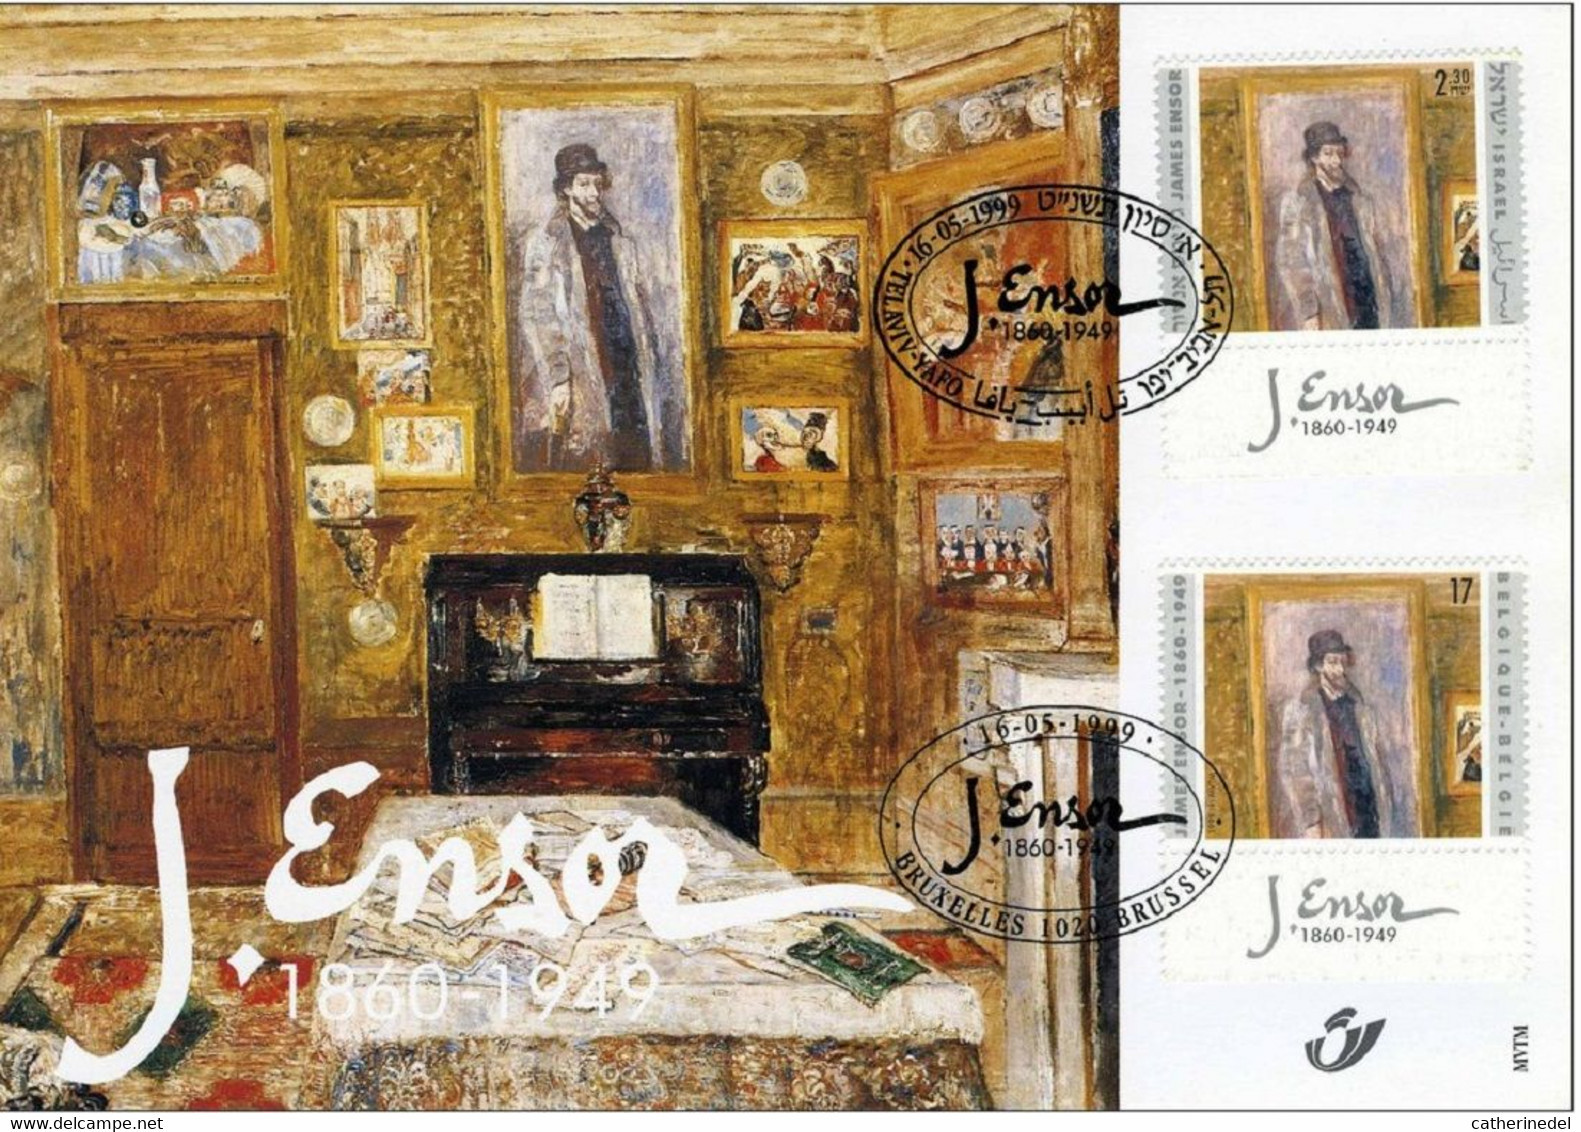 Année 1999 : Carte Souvenir 2822HK - James Ensor - Cartas Commemorativas - Emisiones Comunes [HK]